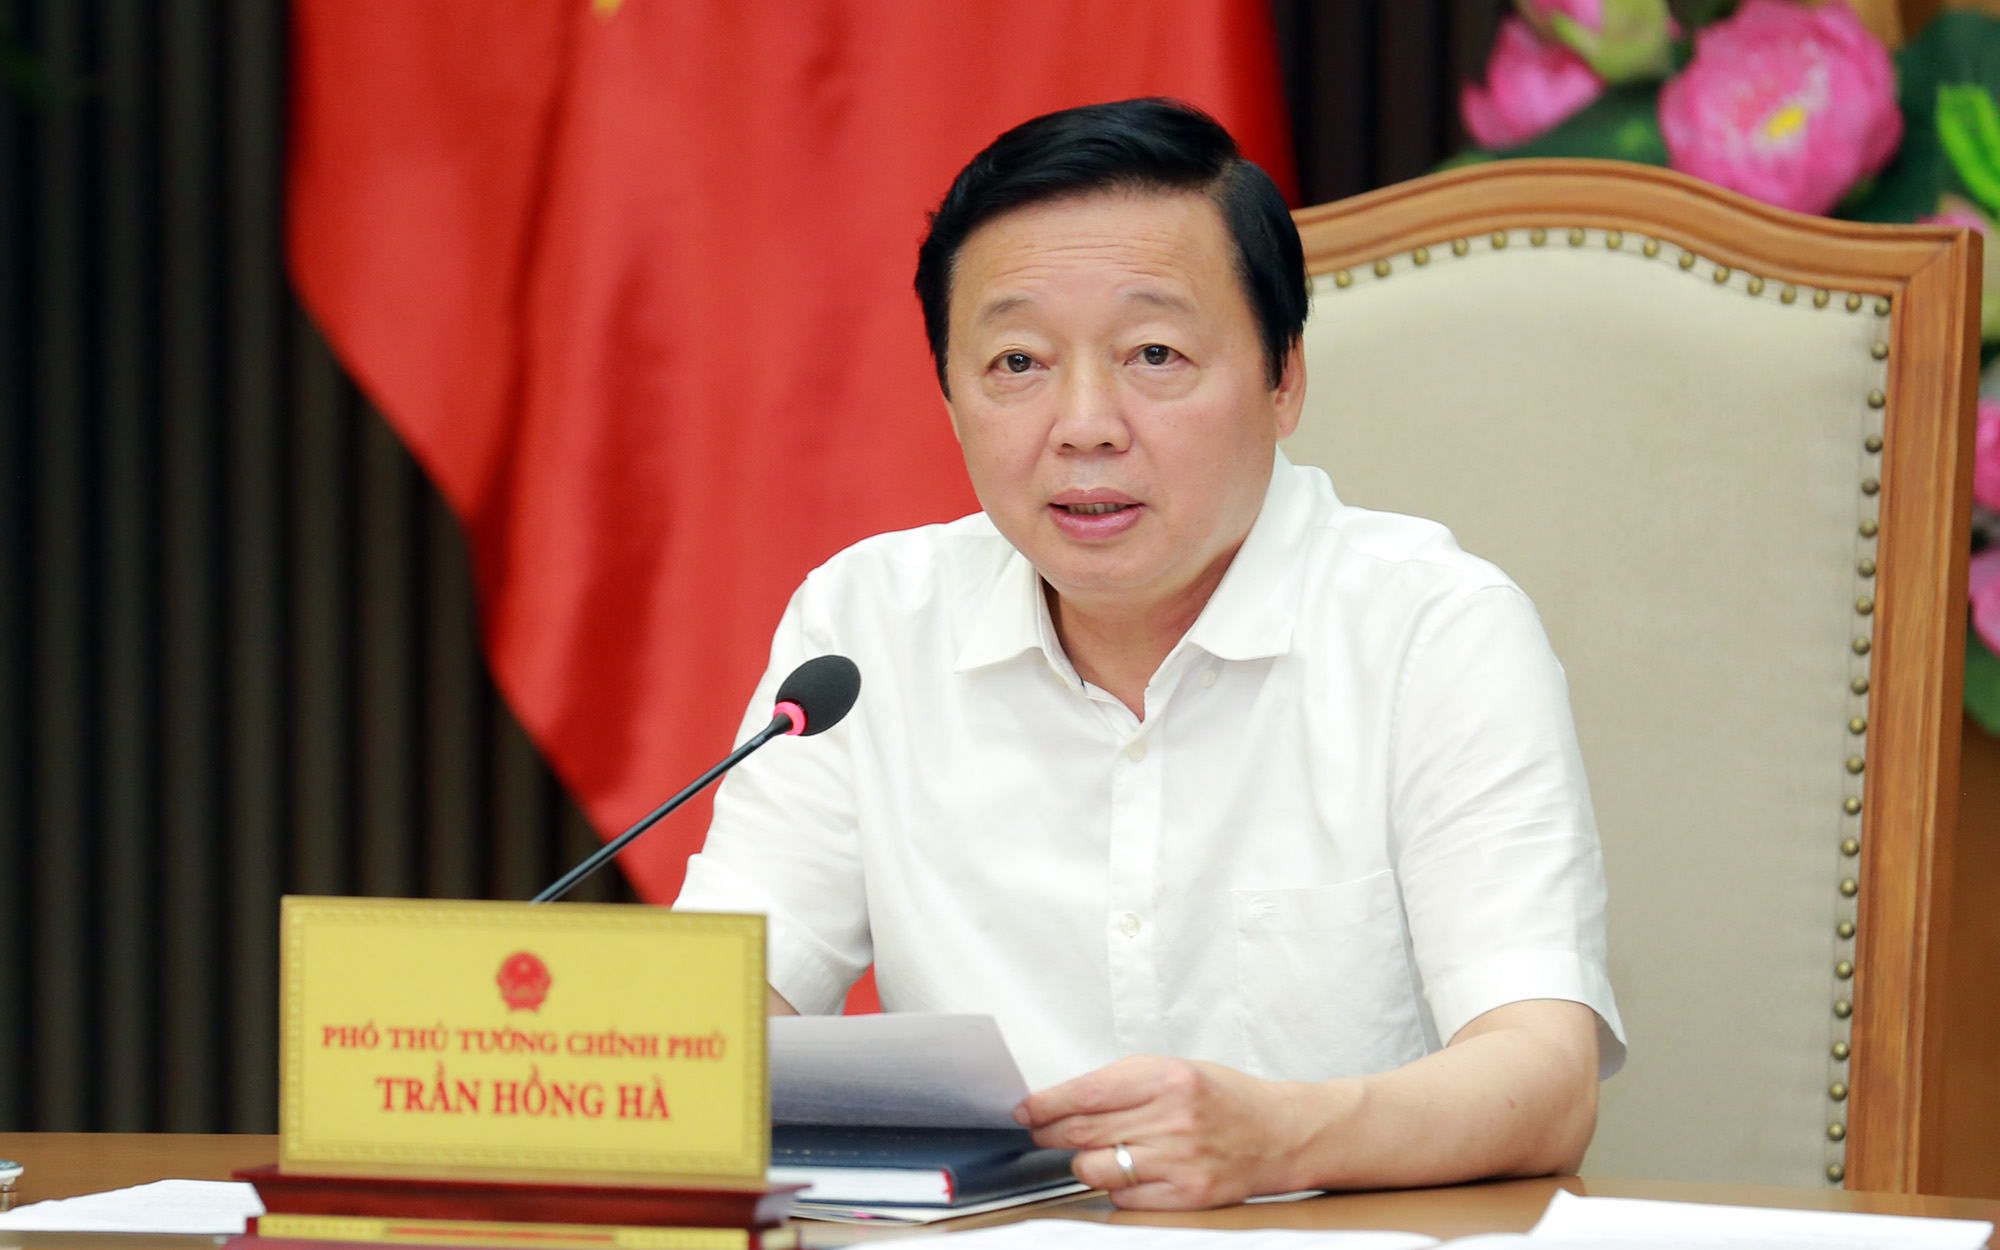 Phó Thủ tướng Trần Hồng Hà: Trước mắt cần có ngay cơ chế, chính sách mang tính đột phá, thúc đẩy phát triển điện mặt trời mái nhà - Ảnh: VGP/Minh Khôi